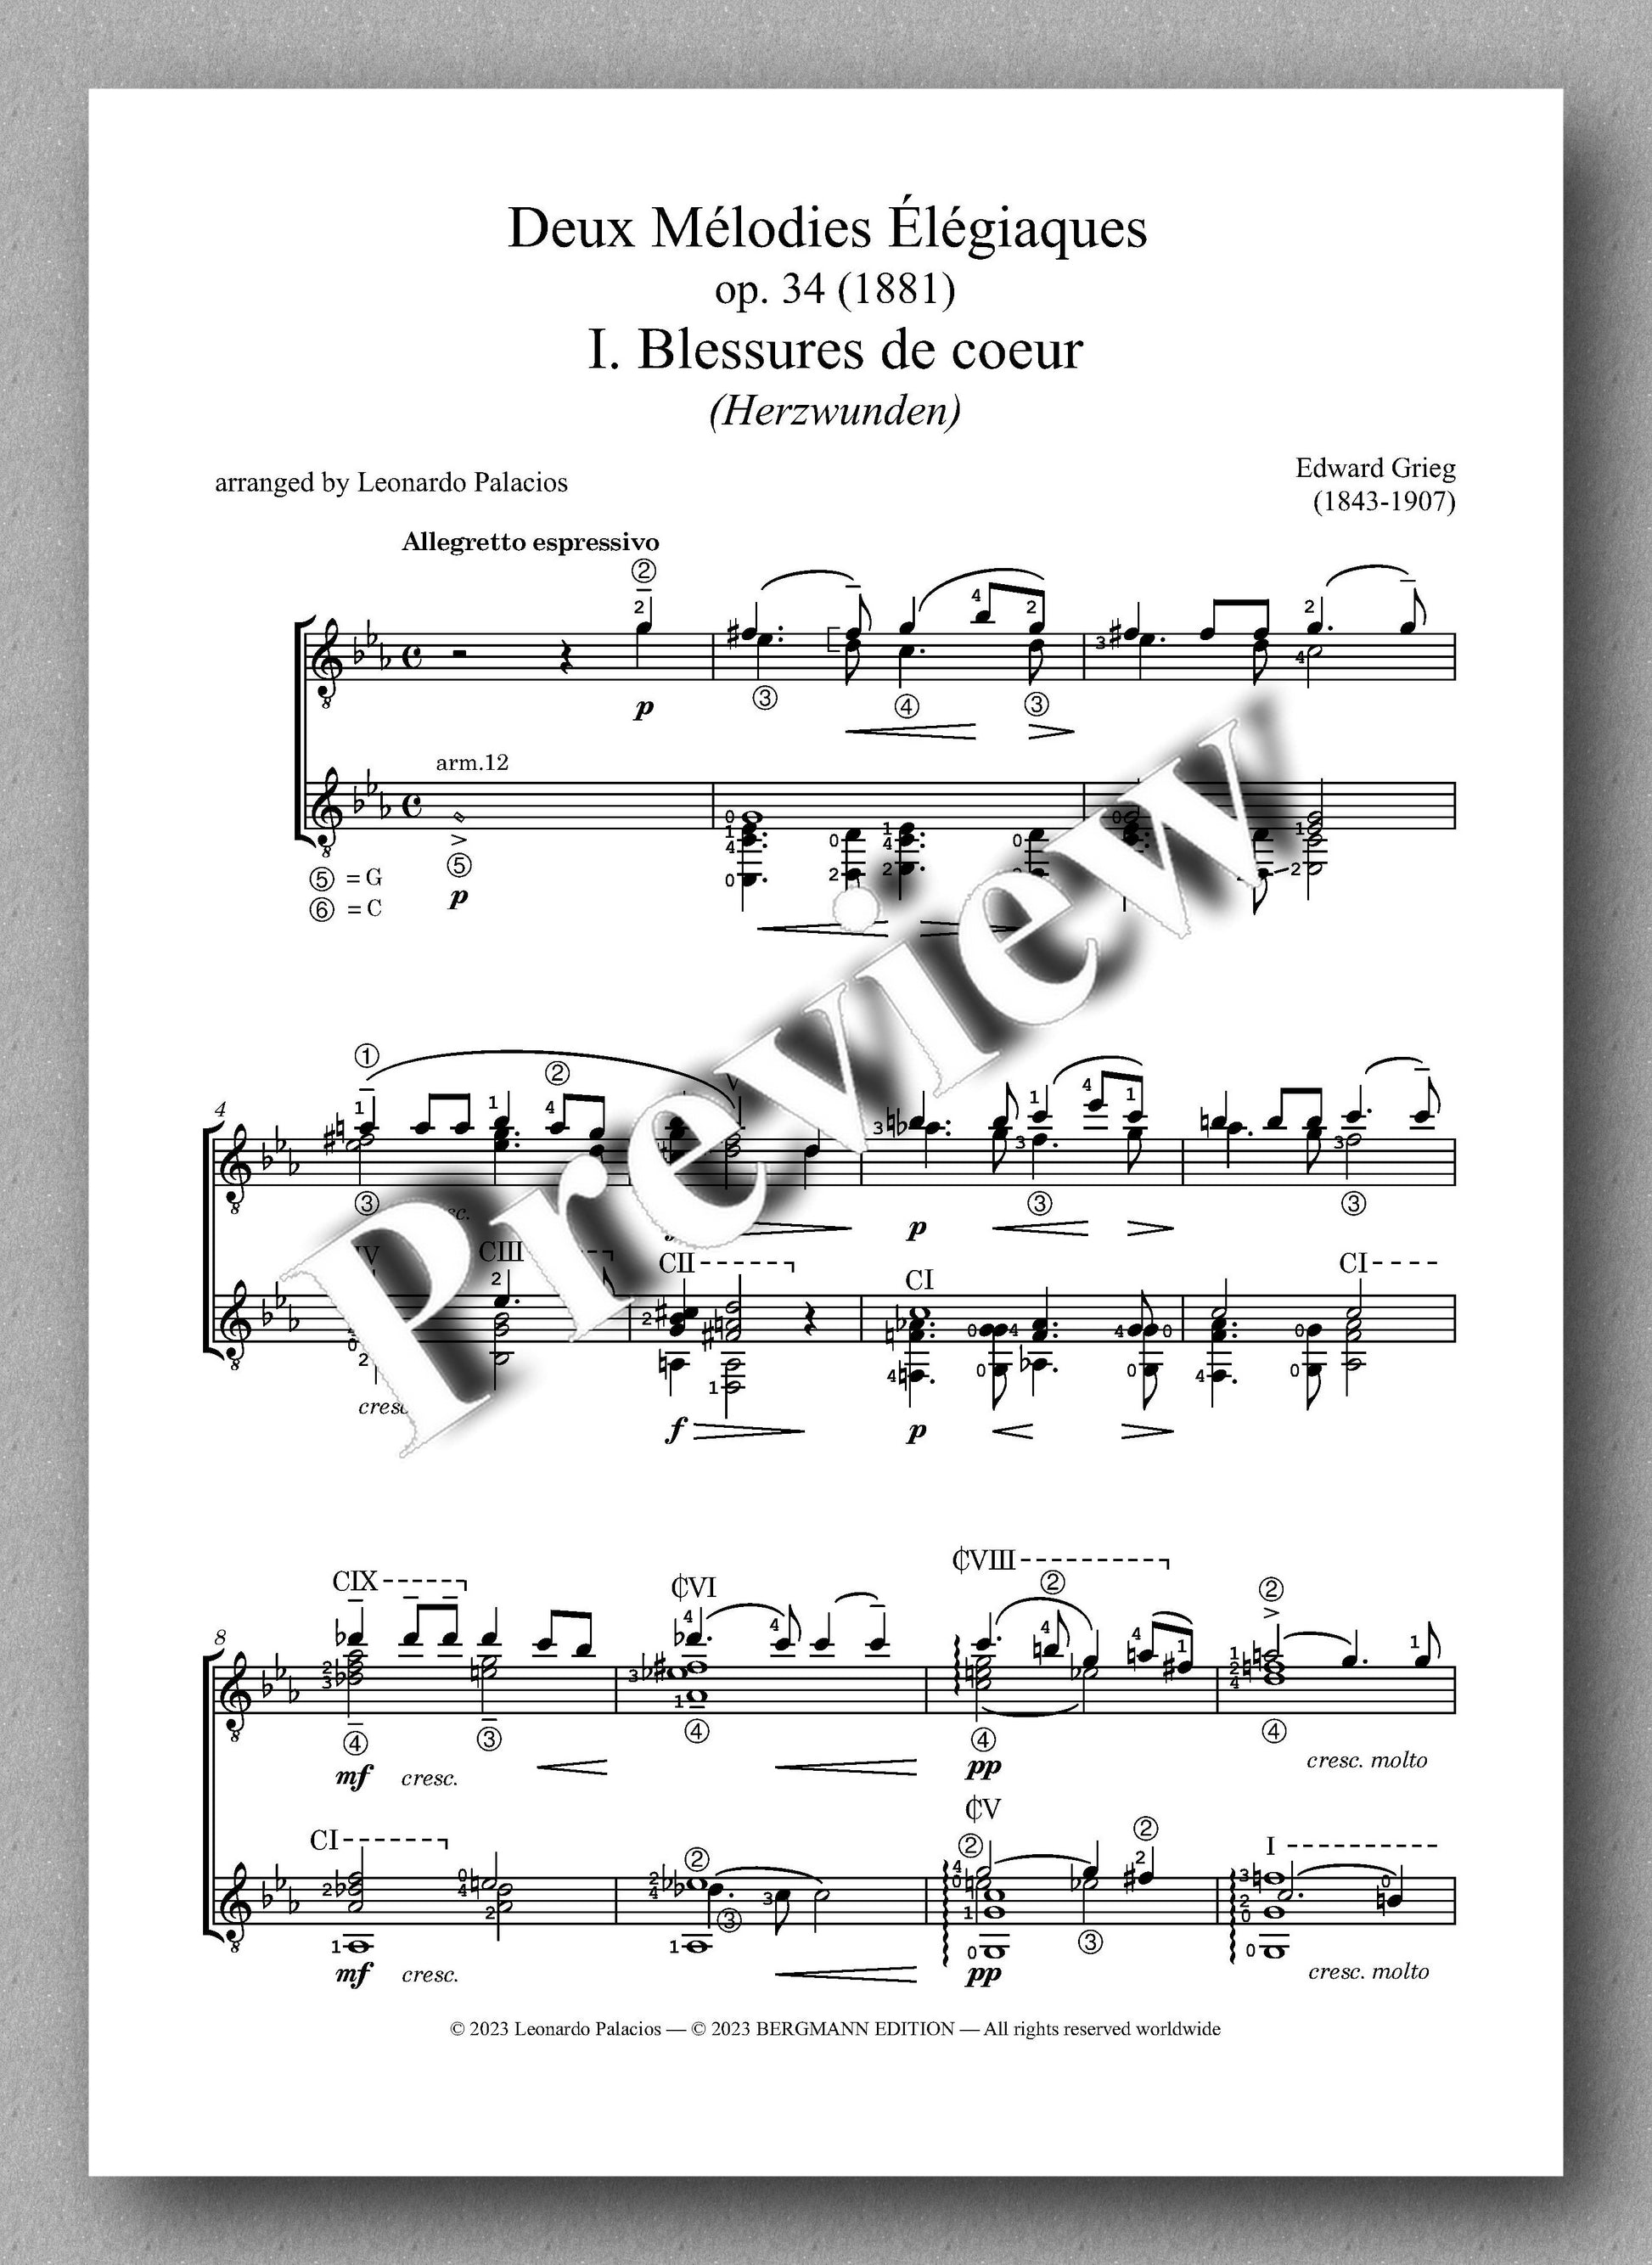 Edward Grieg, Deux Mélodies Élégiaques, op. 34 - preview of the music score 1